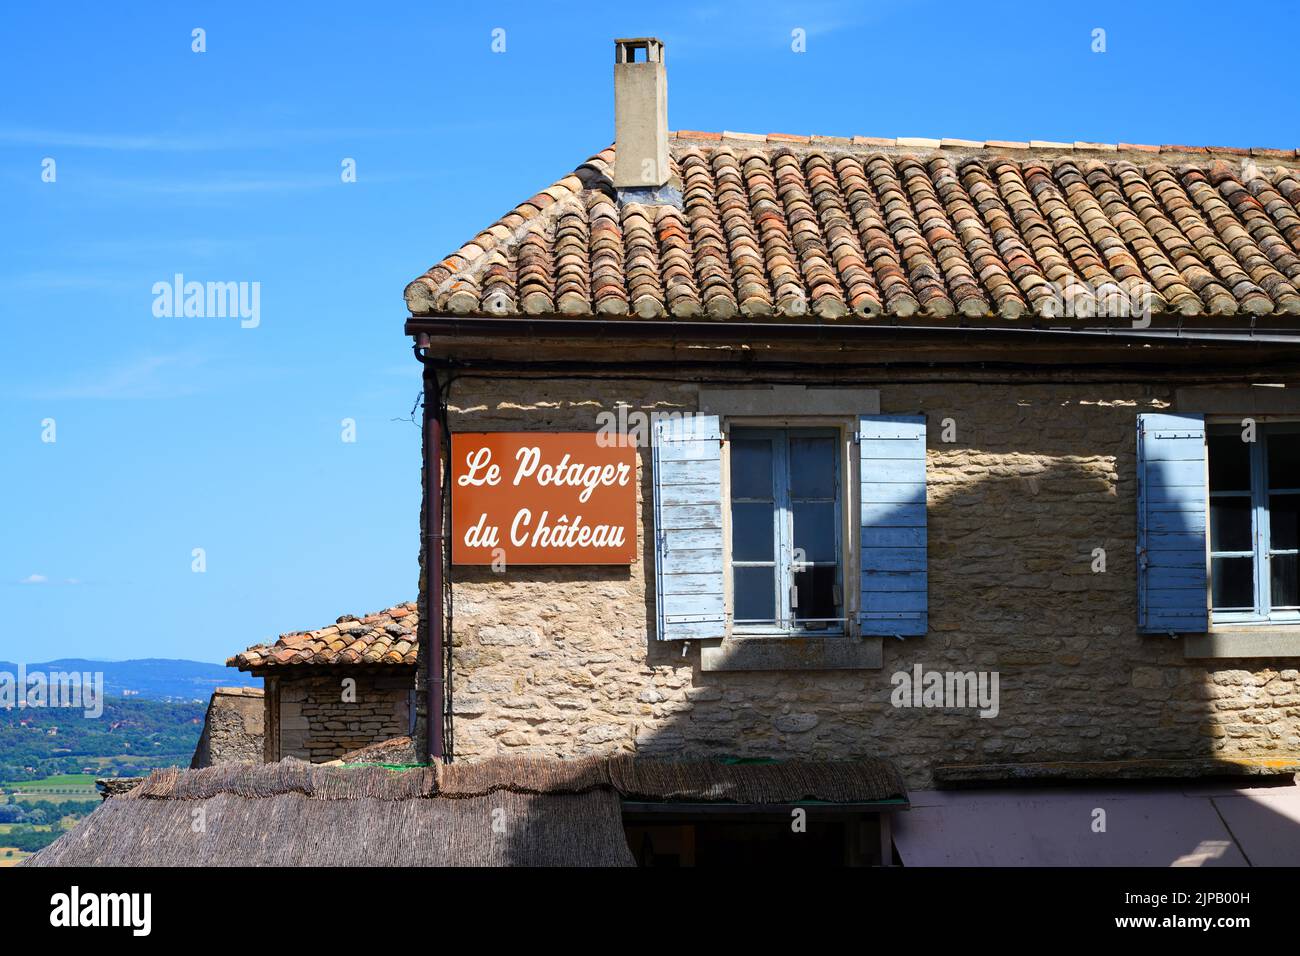 GORDES, FRANCIA -1 DE JULIO de 2021- Vista del centro de Gordes, un histórico pueblo medieval encaramado de Gordes en la zona de Luberon de Vaucluse, Provenza, Francia. Foto de stock